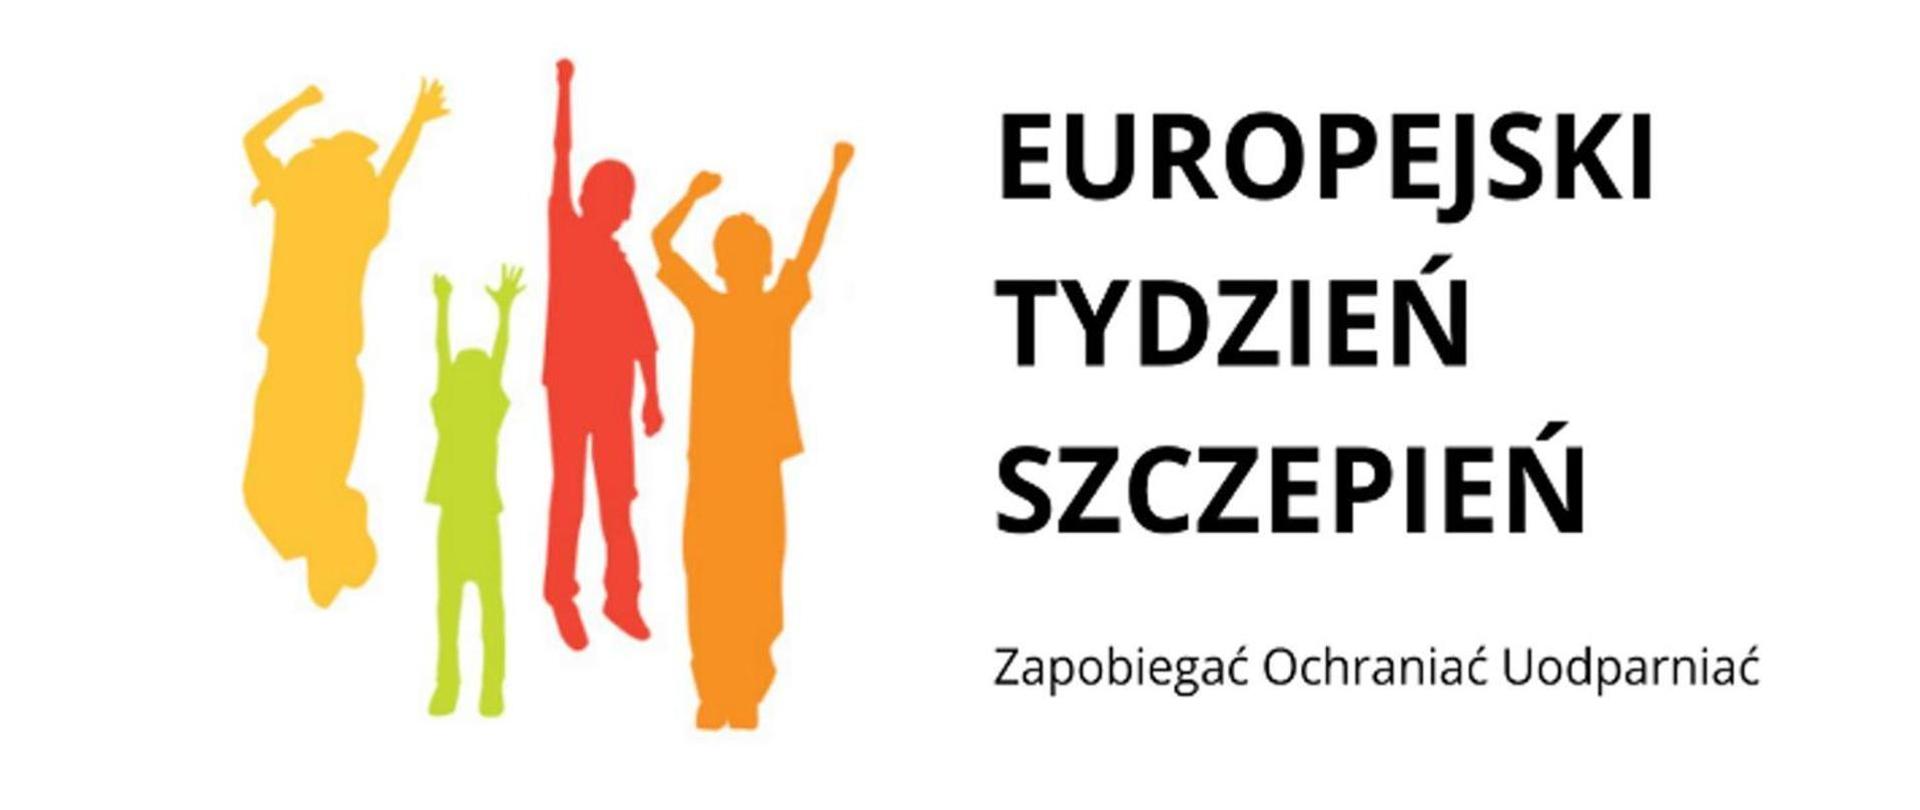 Obraz zawierający tekst "Europejski Tydzień Szczepień" oraz kolorową grafikę przedstawiającą cztery osoby z uniesionymi radośnie rękami.